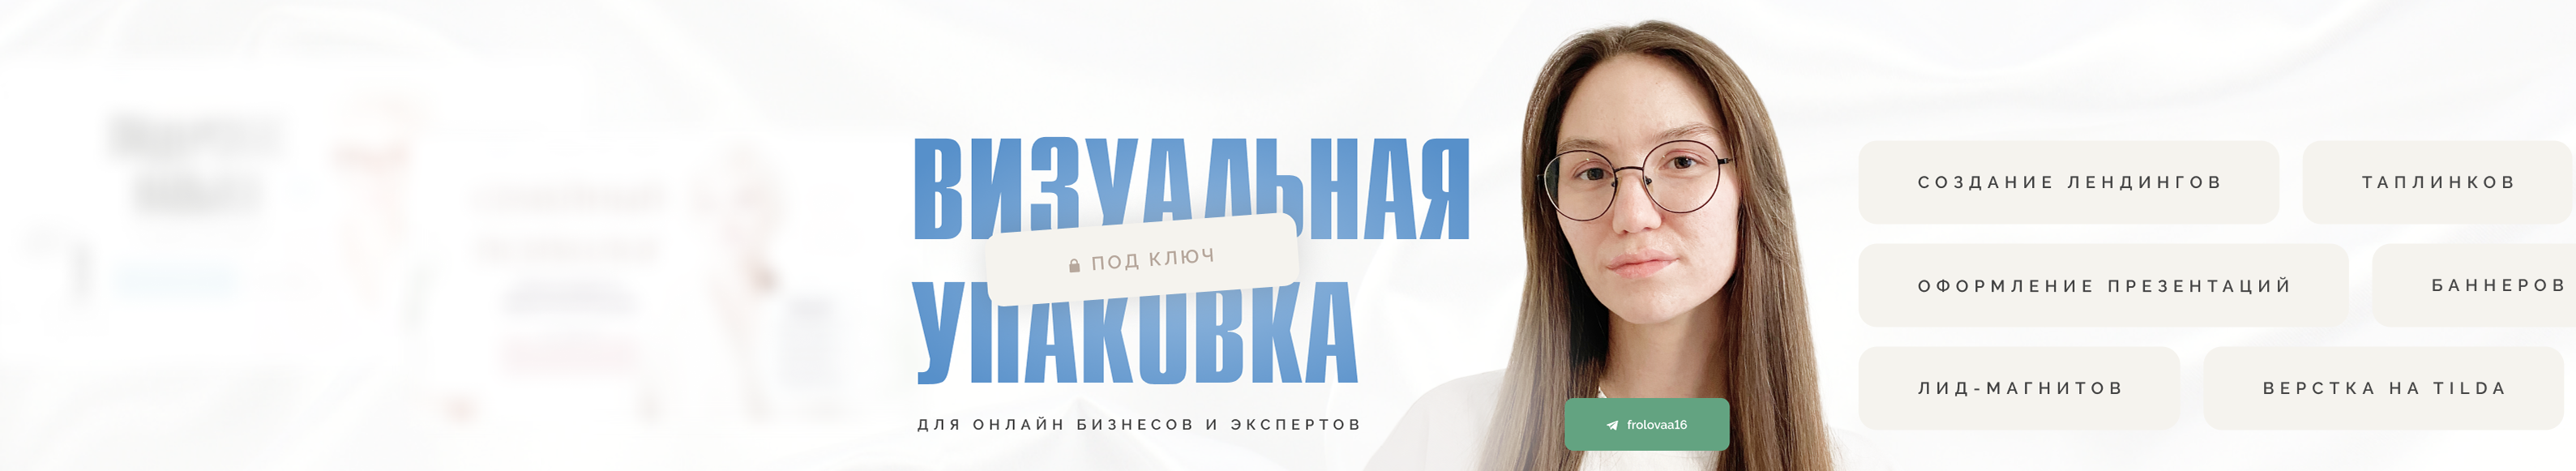 Вероника Фролова's profile banner